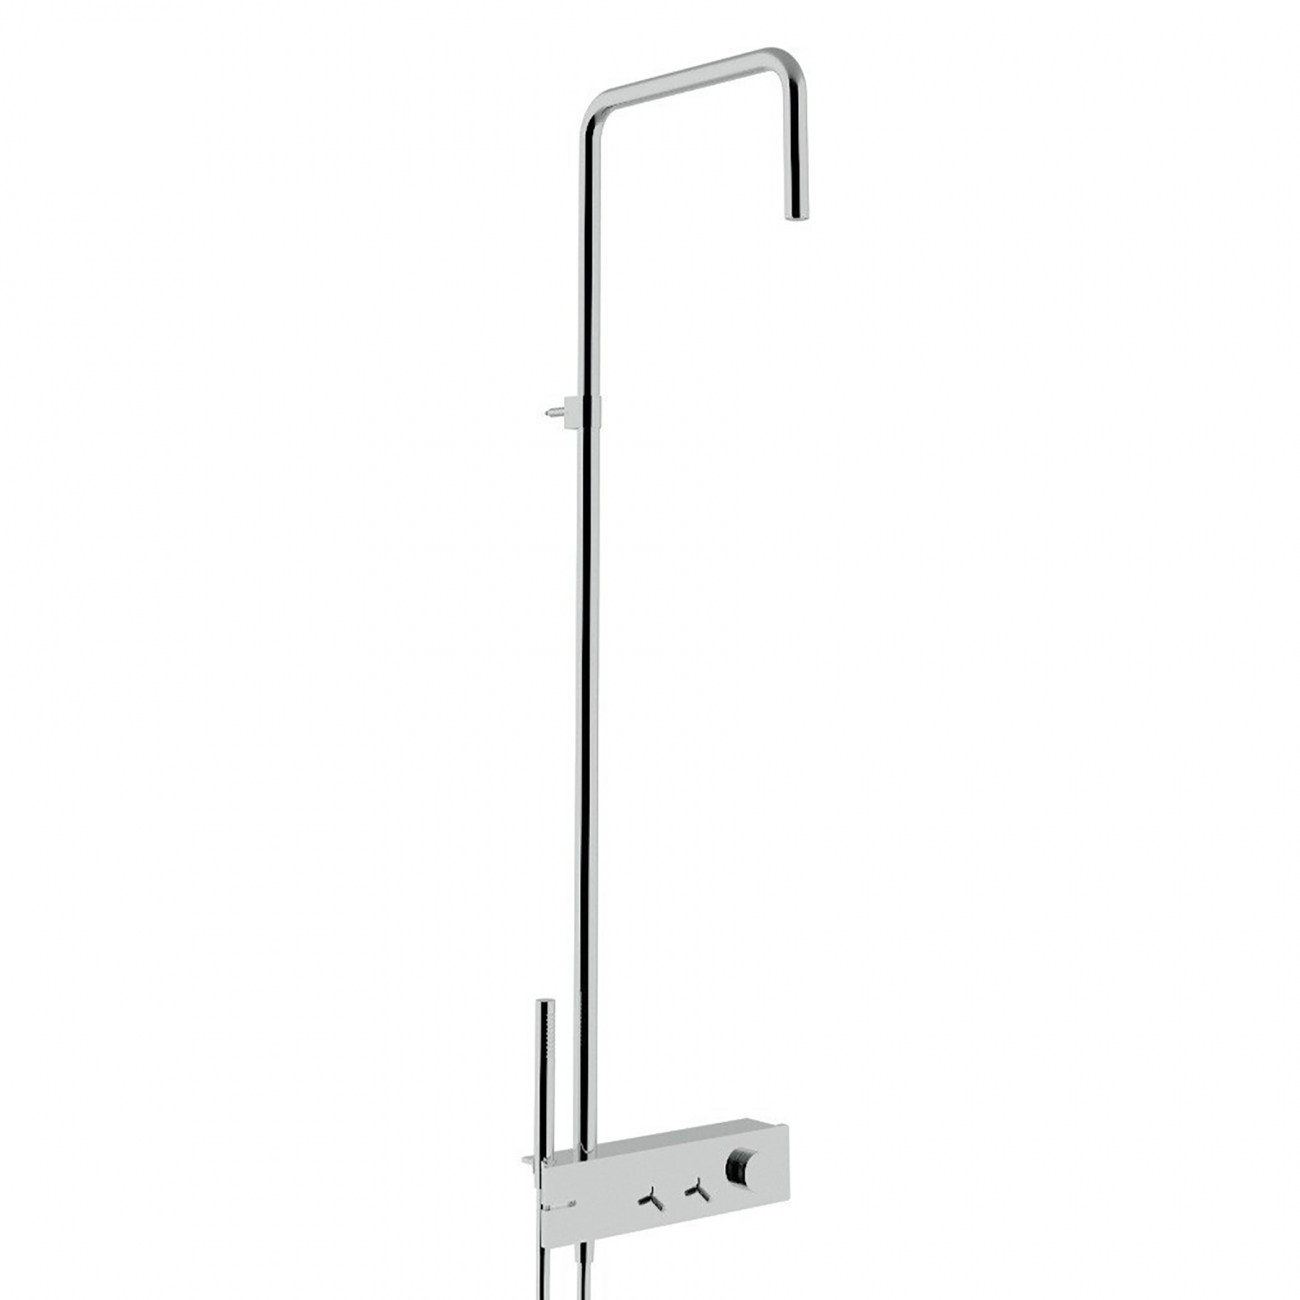 Treemme Watt wall-mounted shower column